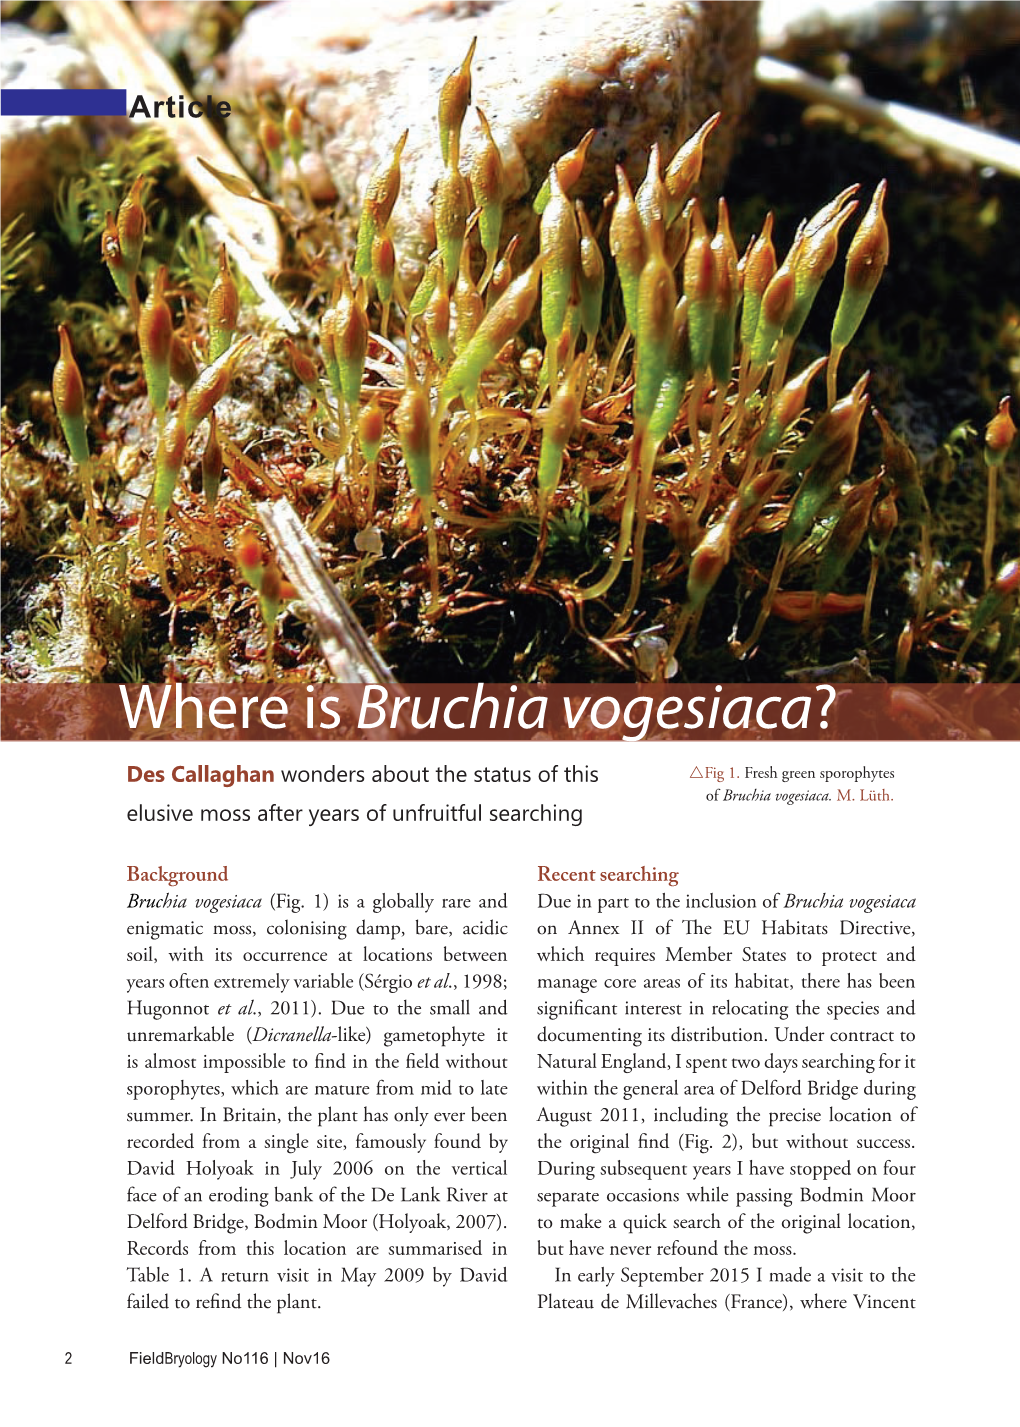 Where Is Bruchia Vogesiaca?